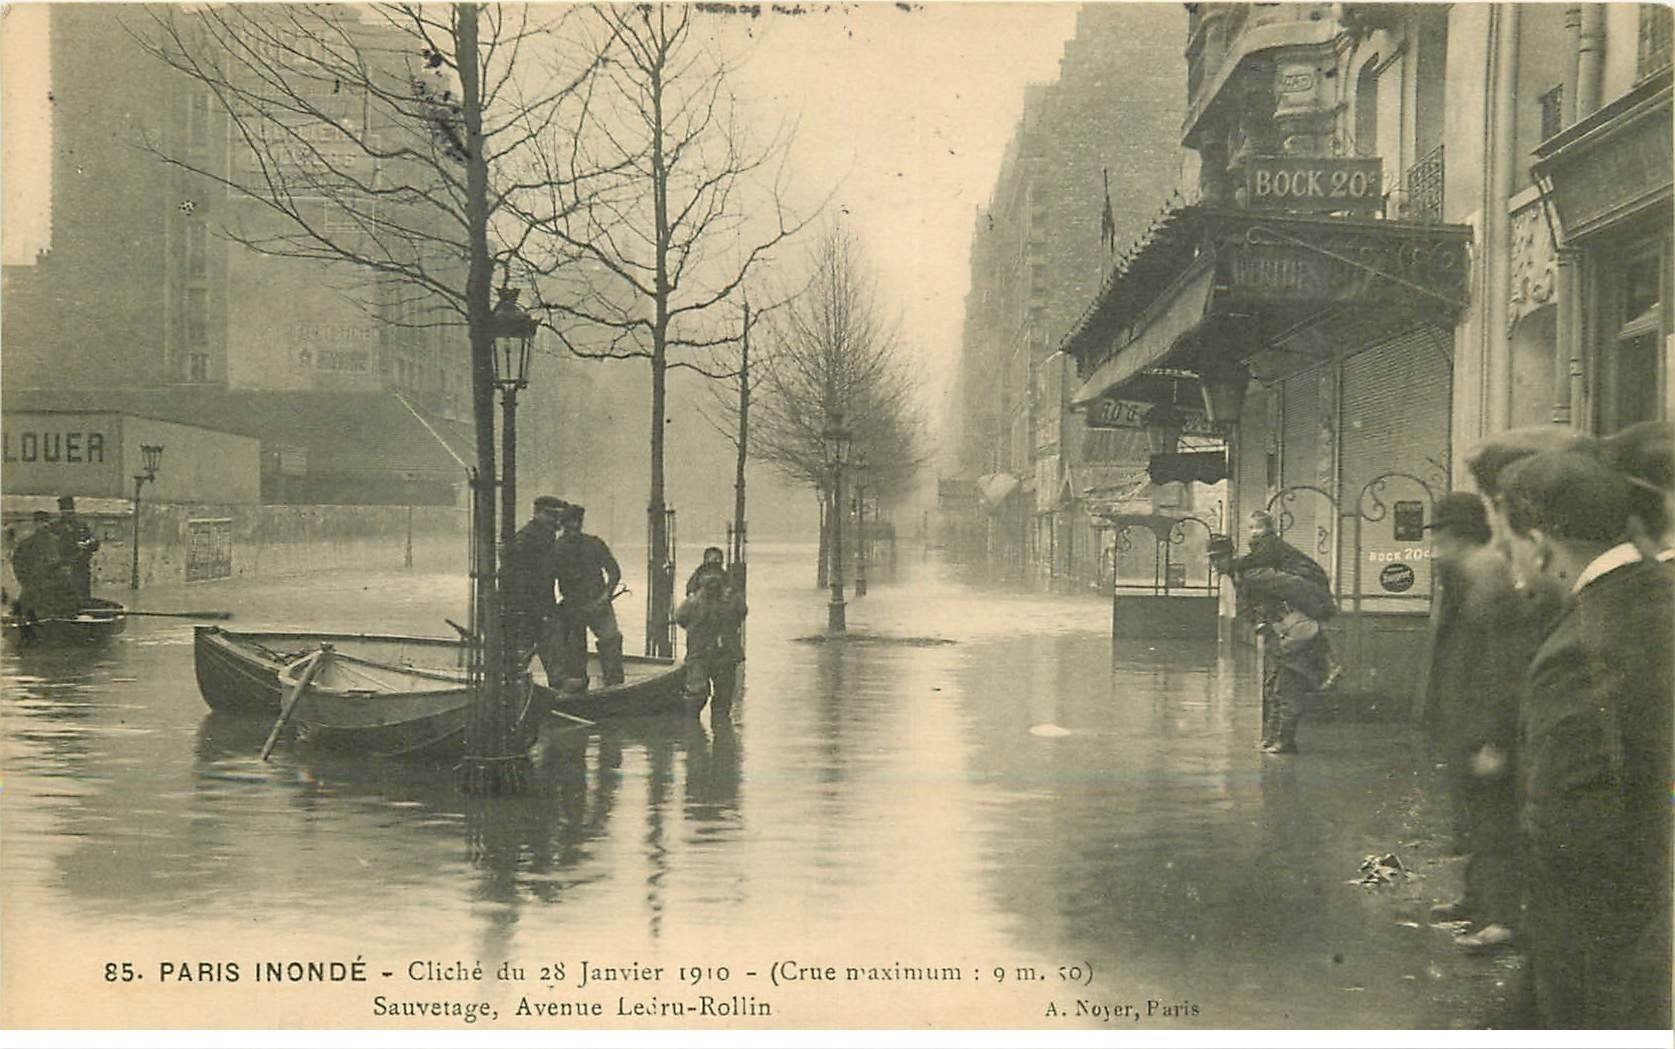 1910 INONDATION ET CRUE DE PARIS 12. Avenue Ledru Rollin sauvetage